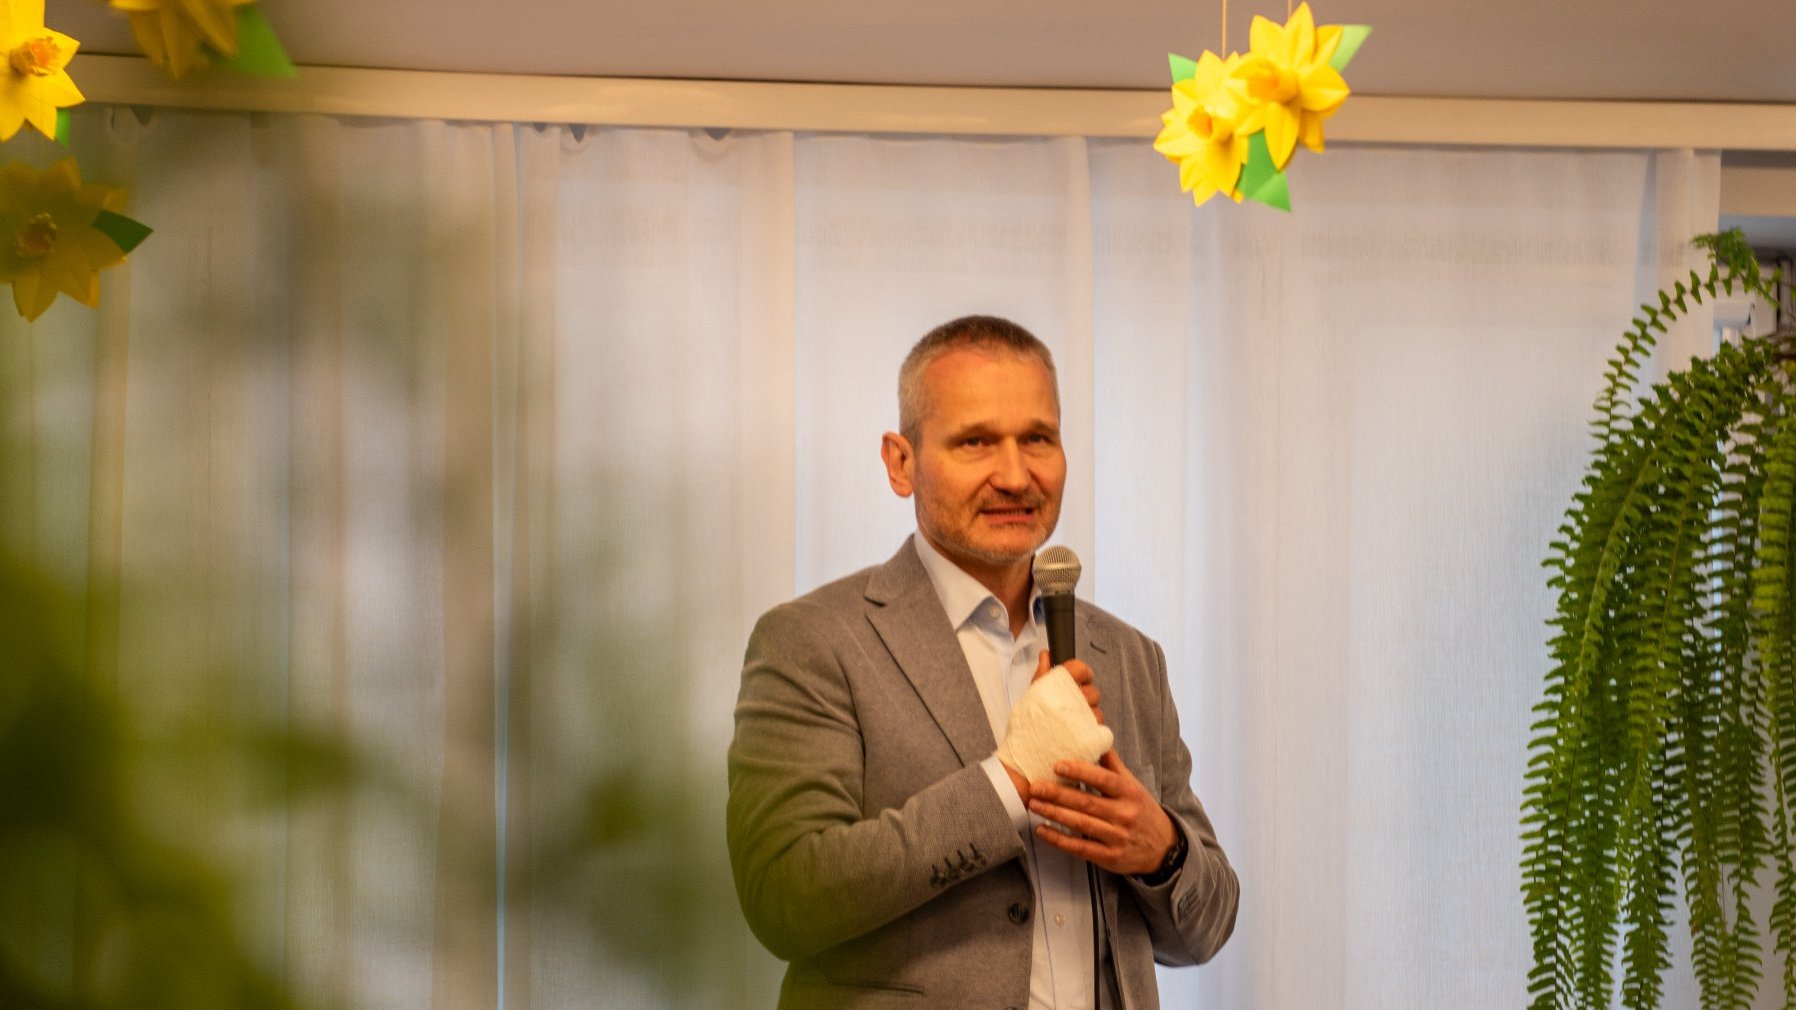 Na zdjęciu zastępca prezydenta Poznania trzymający mikrofon w ręku